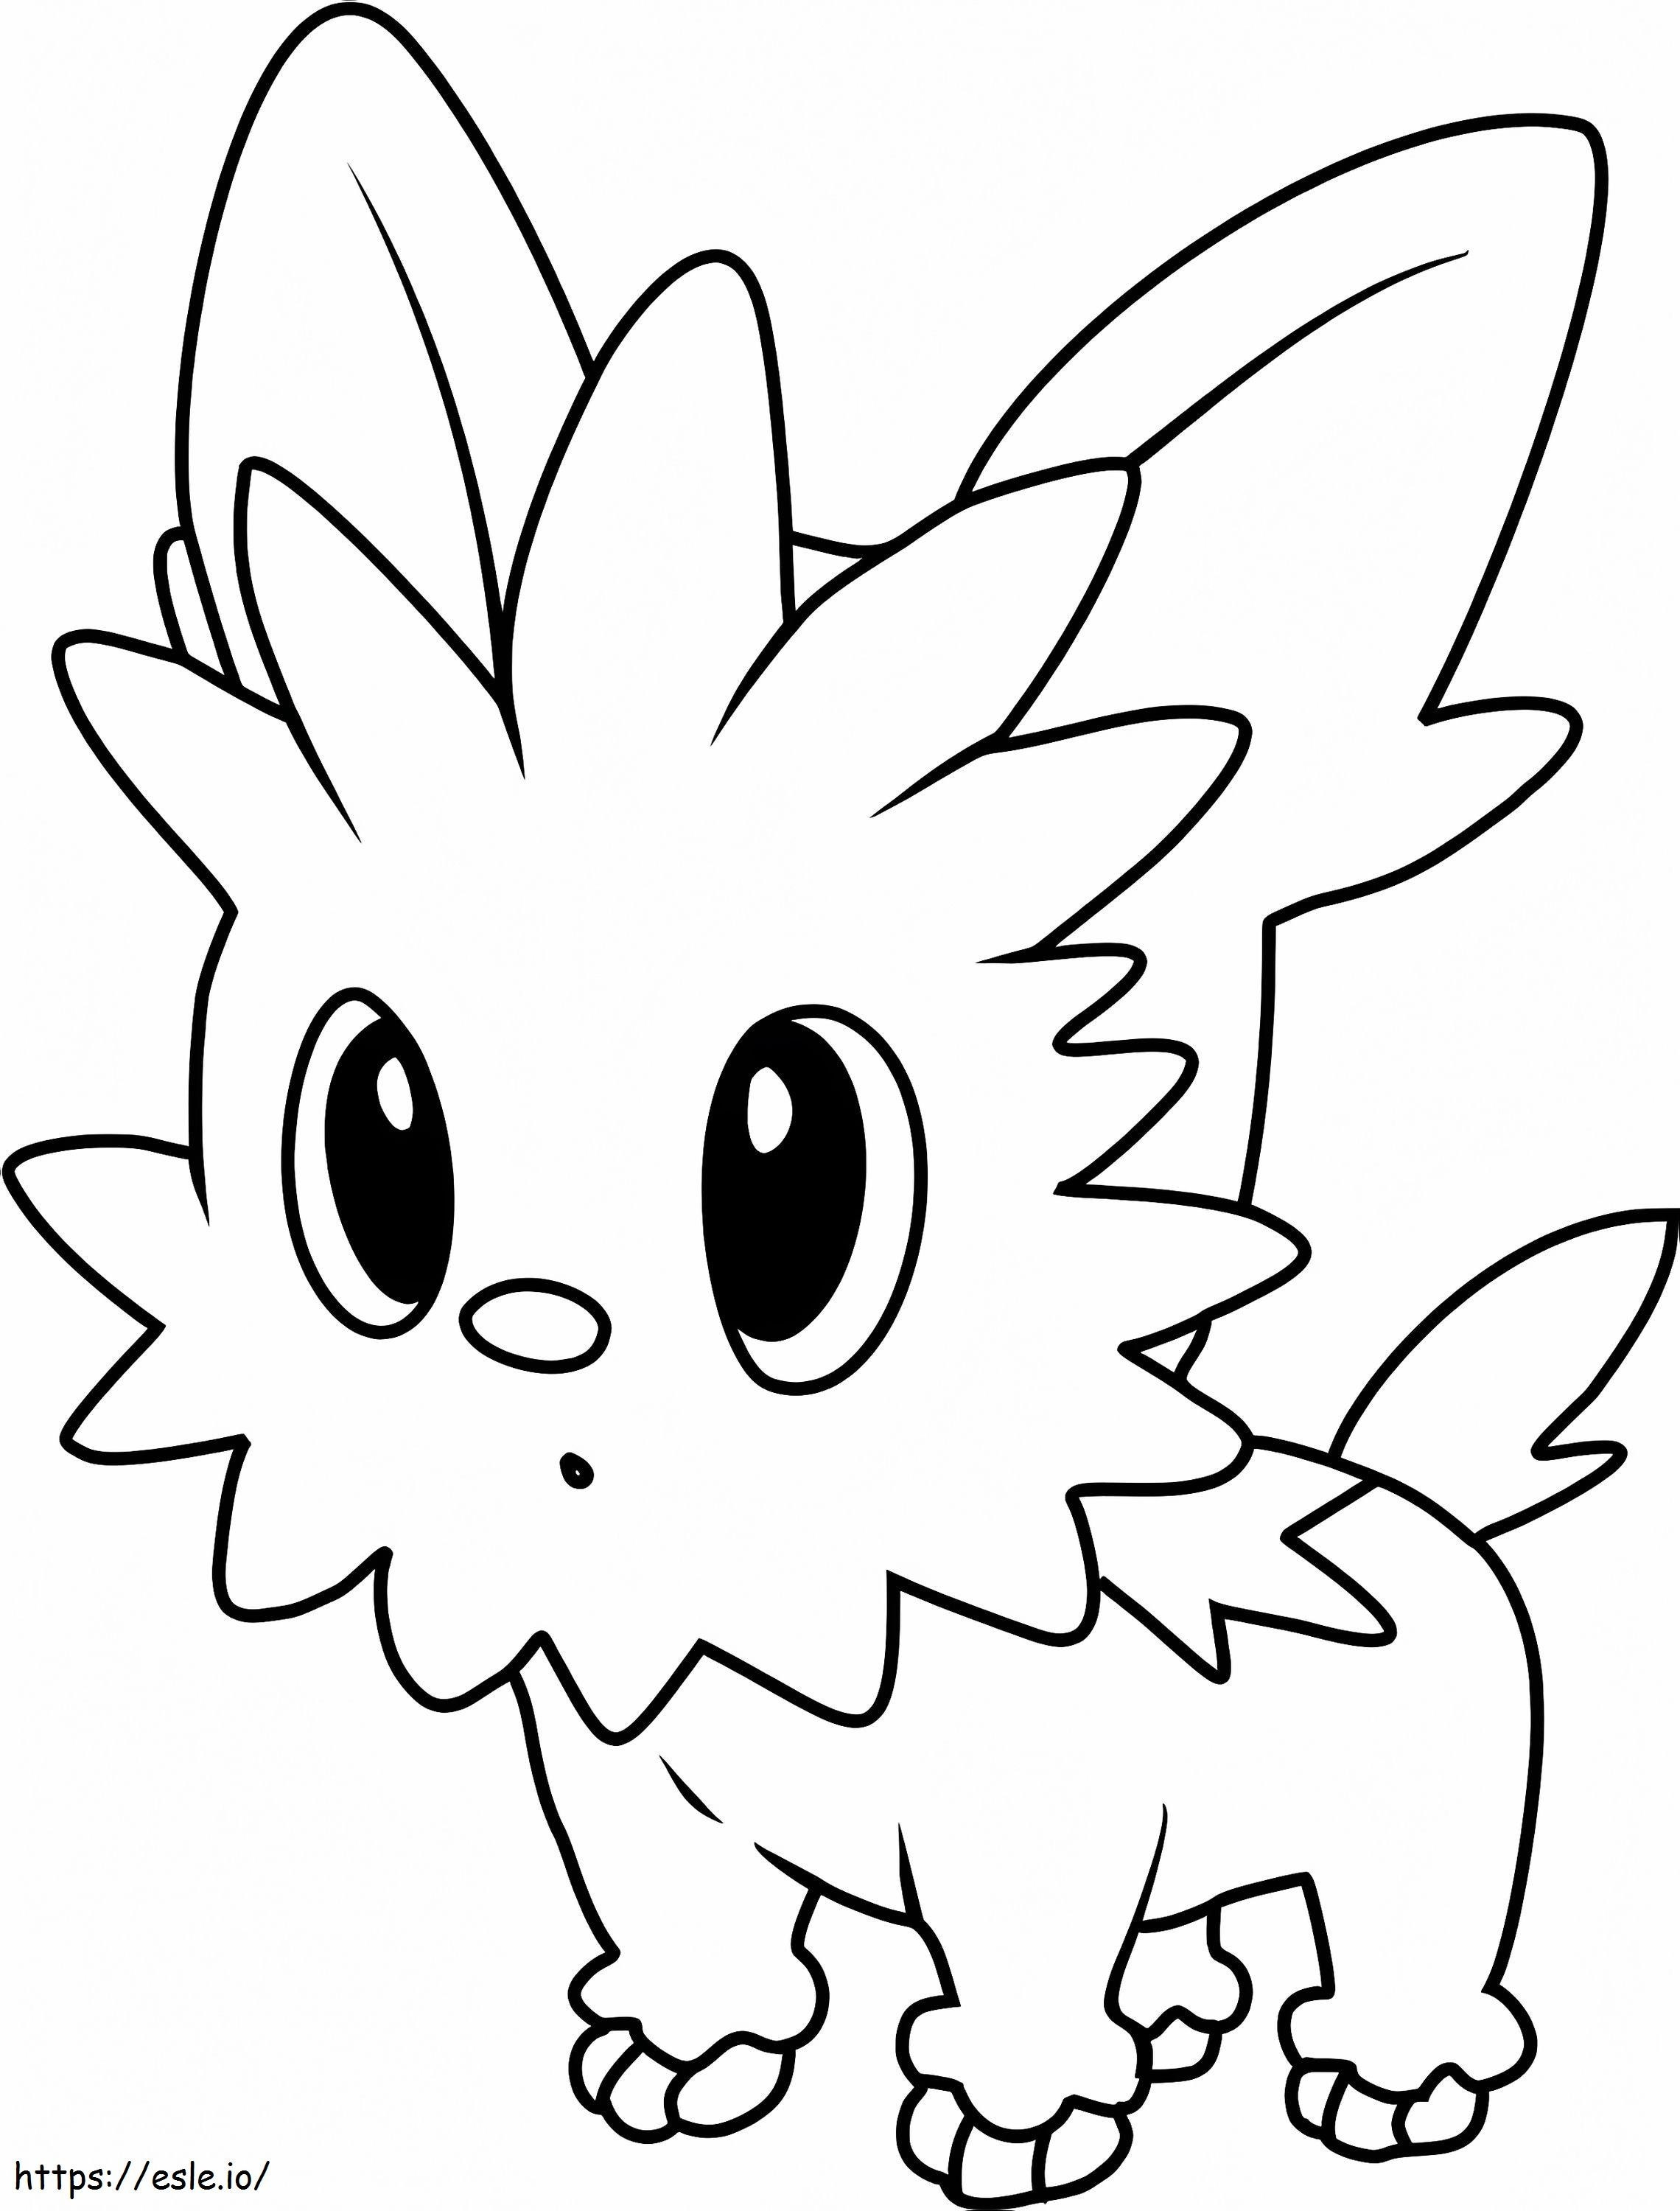 Coloriage Pokémon Lillipup Gen 5 à imprimer dessin